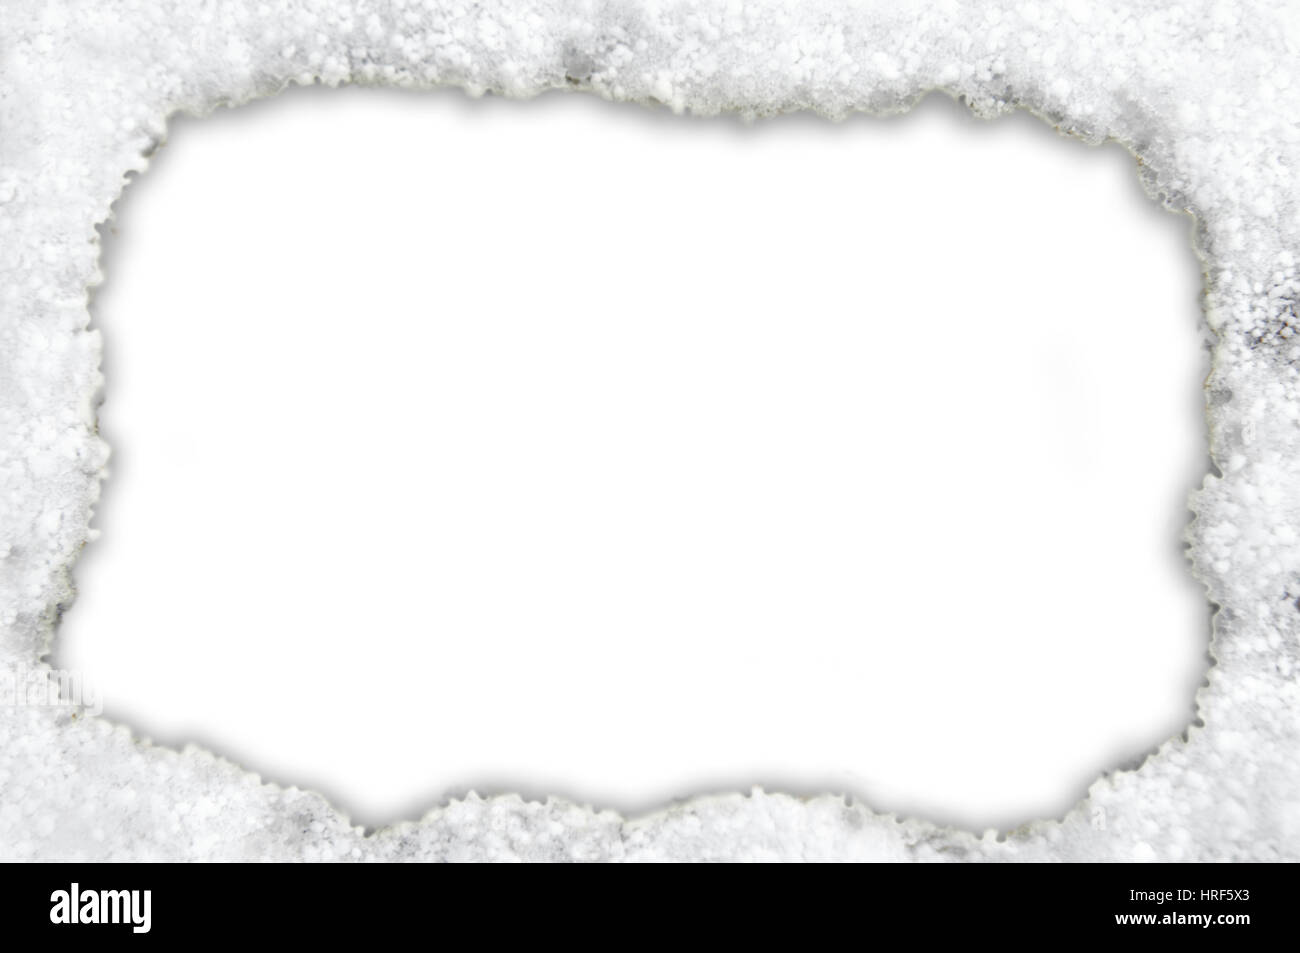 Frame ist umgeben von einem Hintergrund von Schnee.  Weiße Oberfläche ist bereit für die Personalisierung. Stockfoto